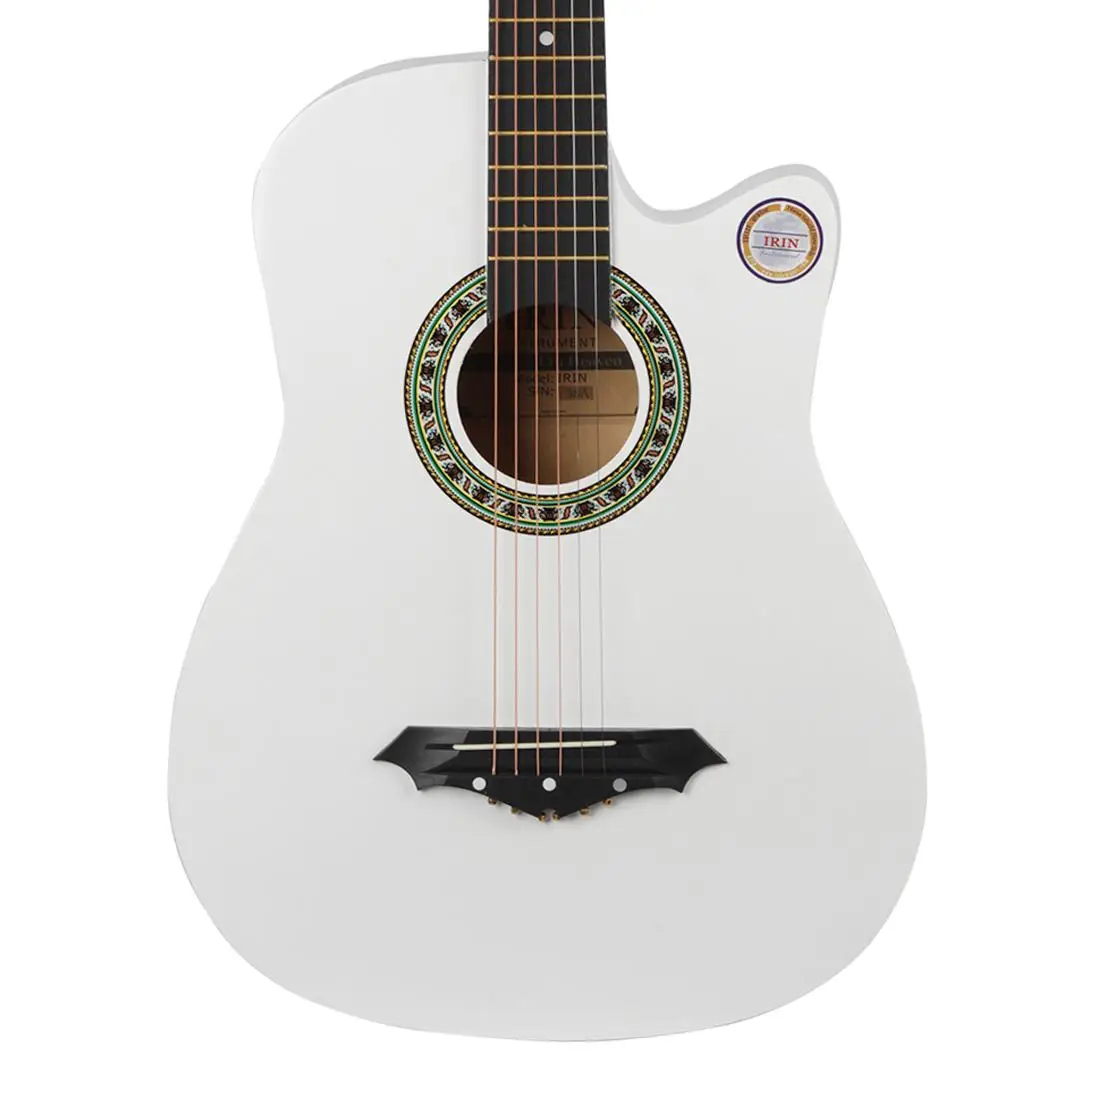 IRIN 38 дюймов гитара Акустическая гитара начинающие начать практическую гитарную струнный инструмент - Цвет: Белый